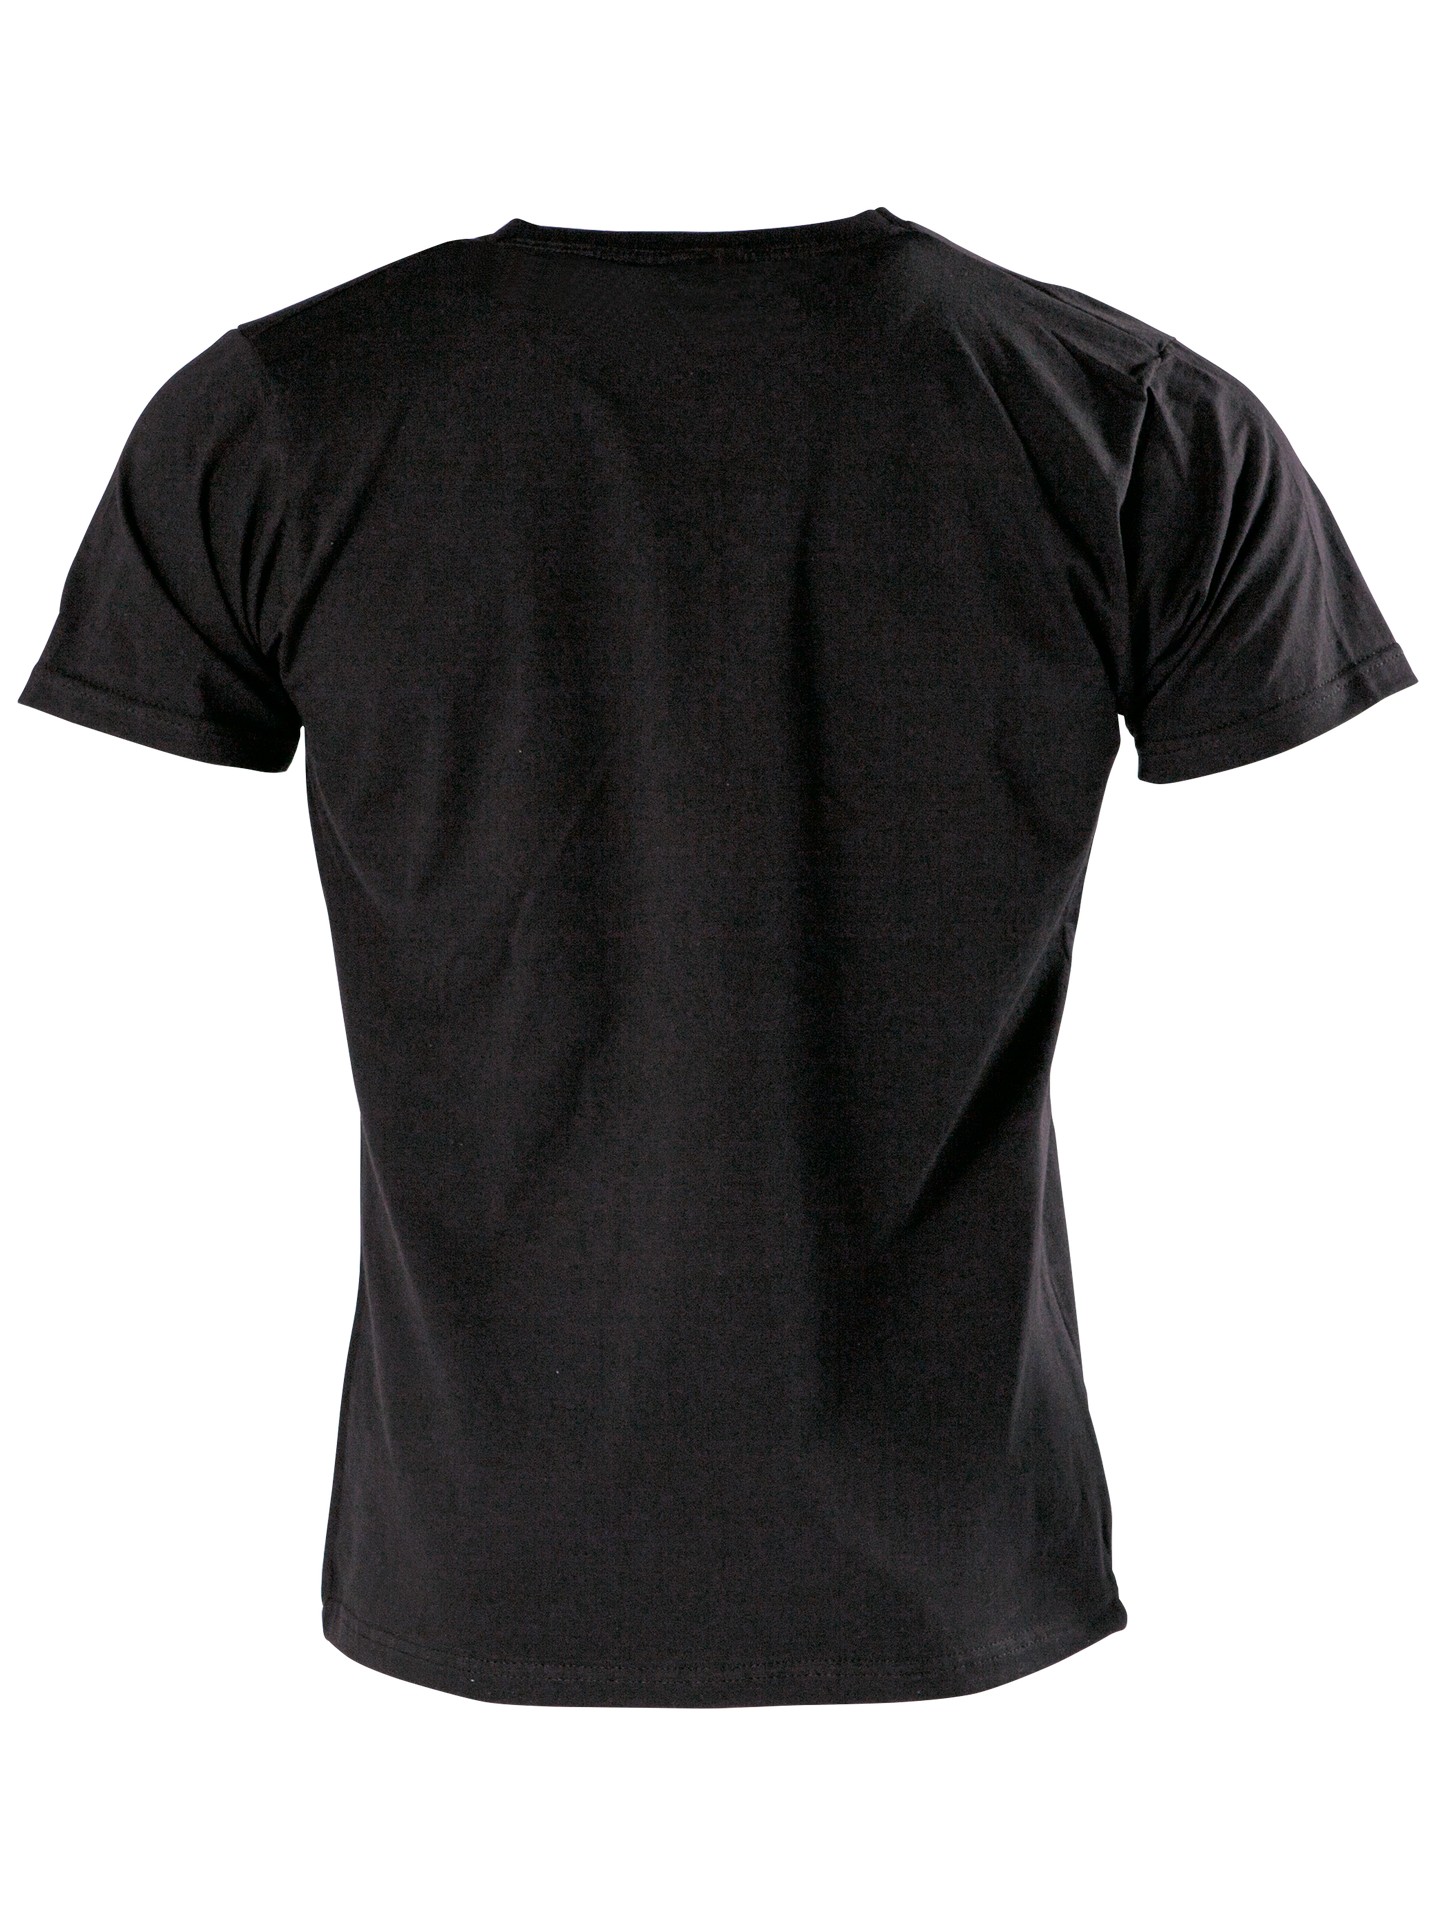 T-Shirt schmal weiss oder schwarz